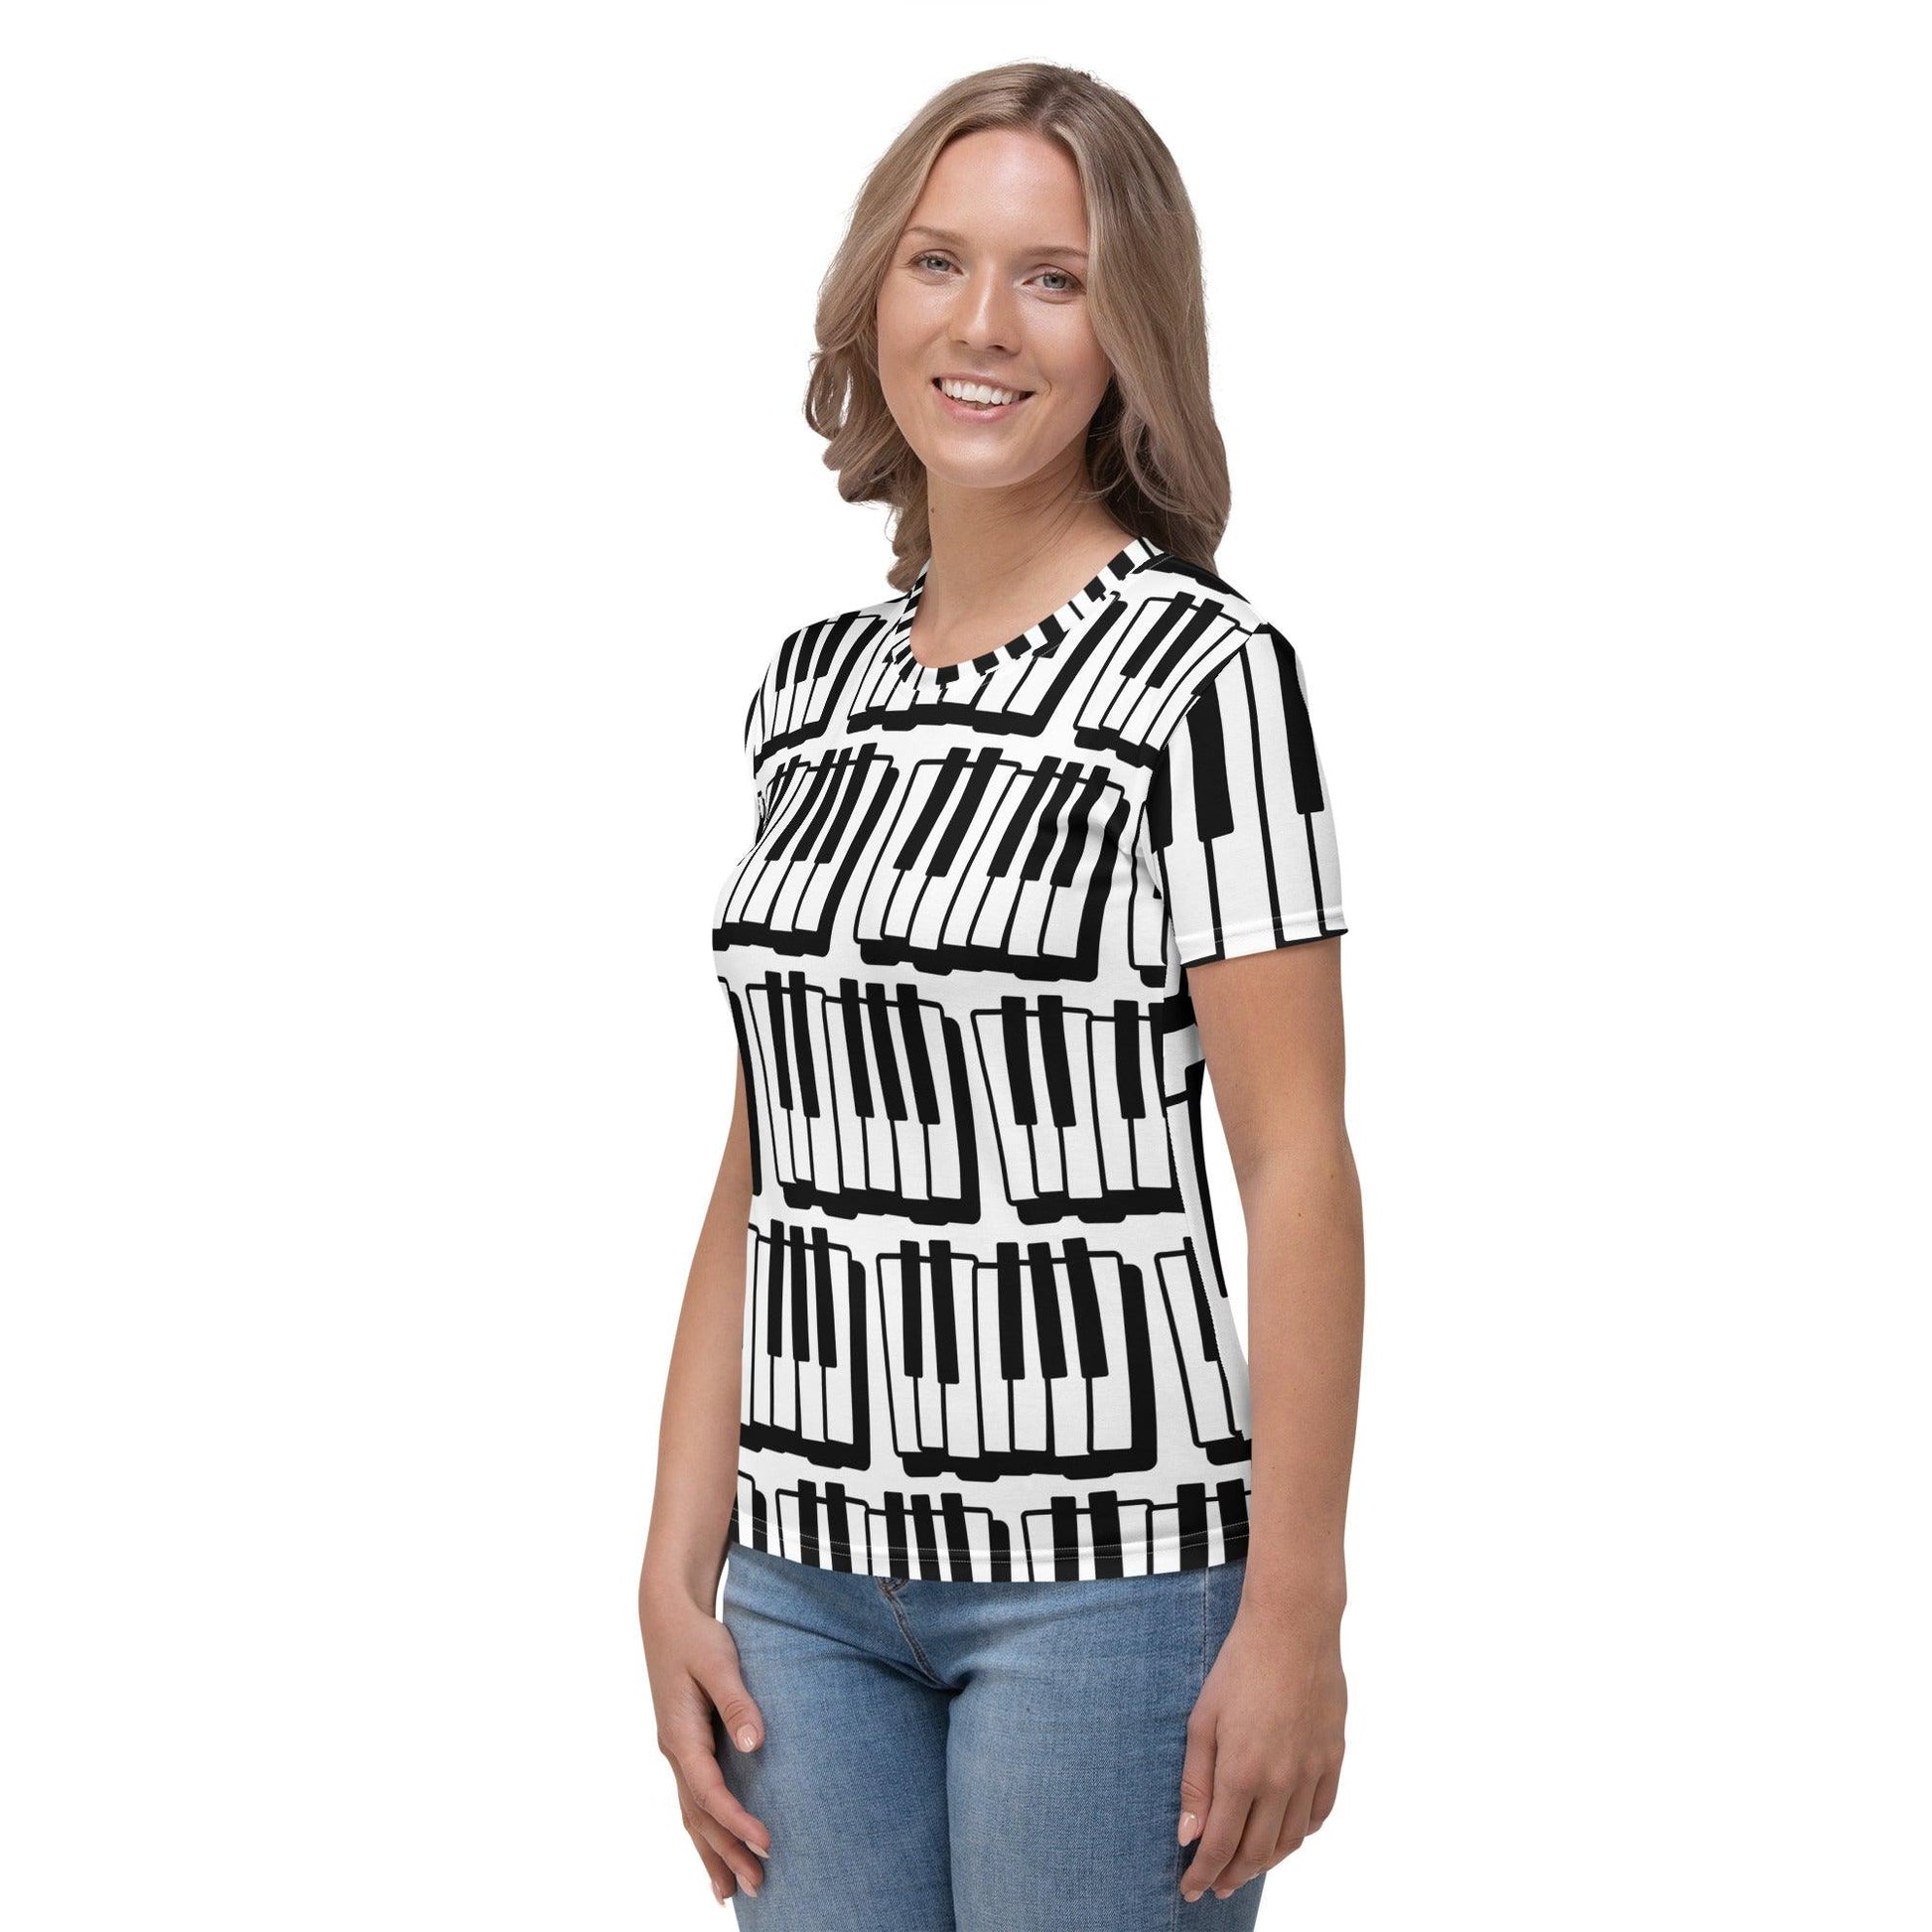 Piano Keyboards Women's T-shirt / Synthesizer Shirt / Organ Tee - Lizard Vigilante